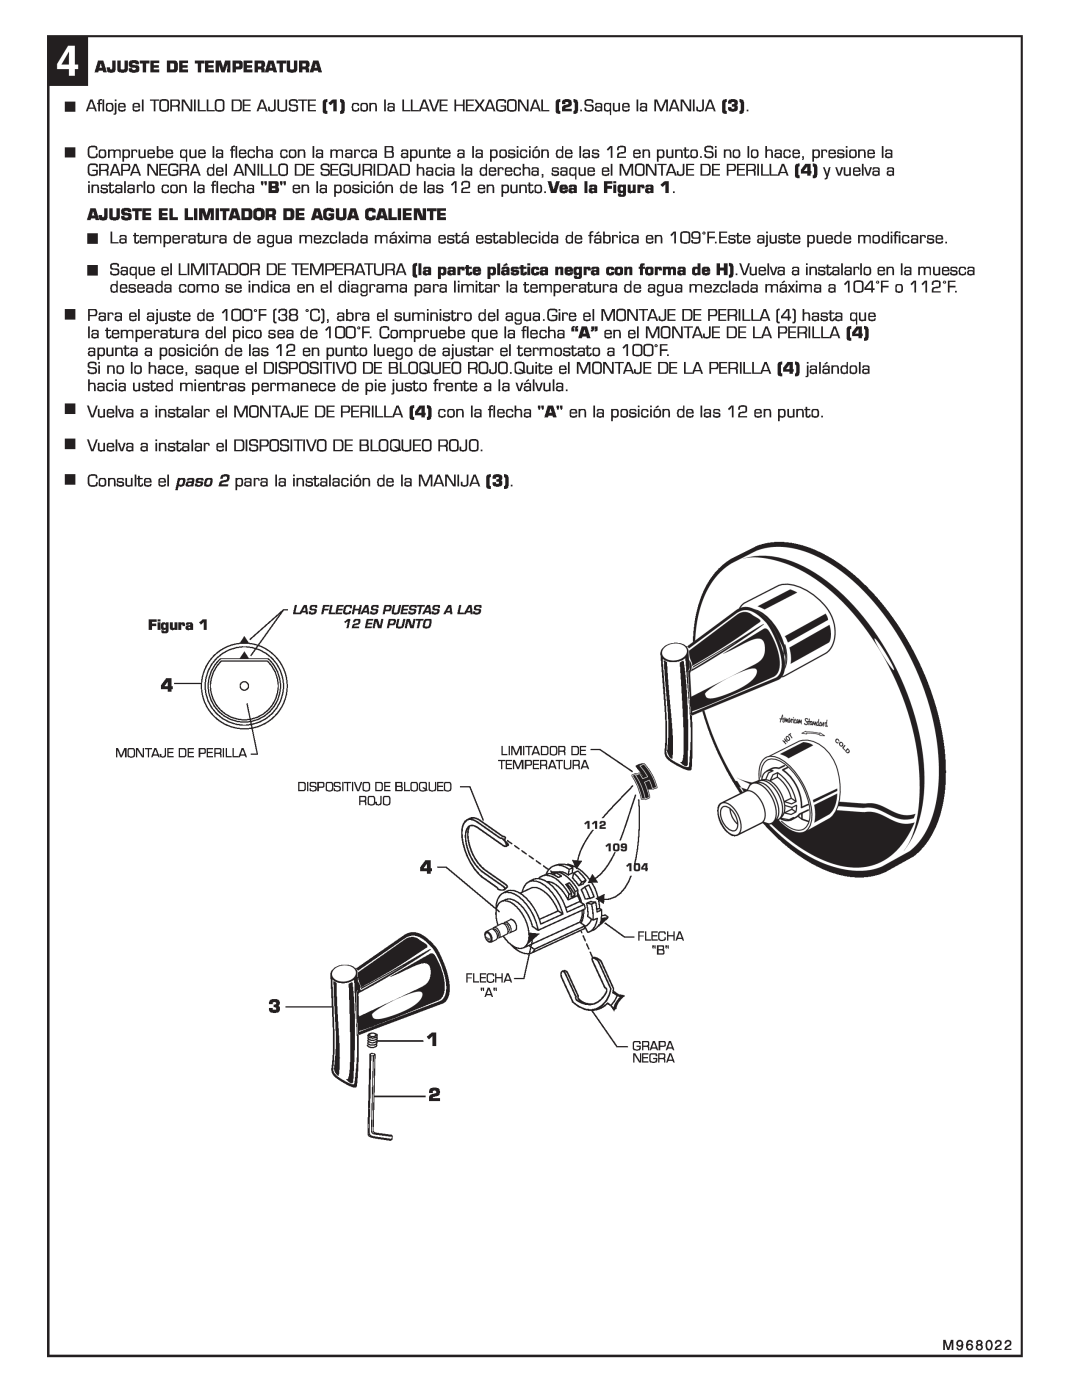 American Standard T010.740 installation instructions Ajuste De Temperatura, Ajuste El Limitador De Agua Caliente 